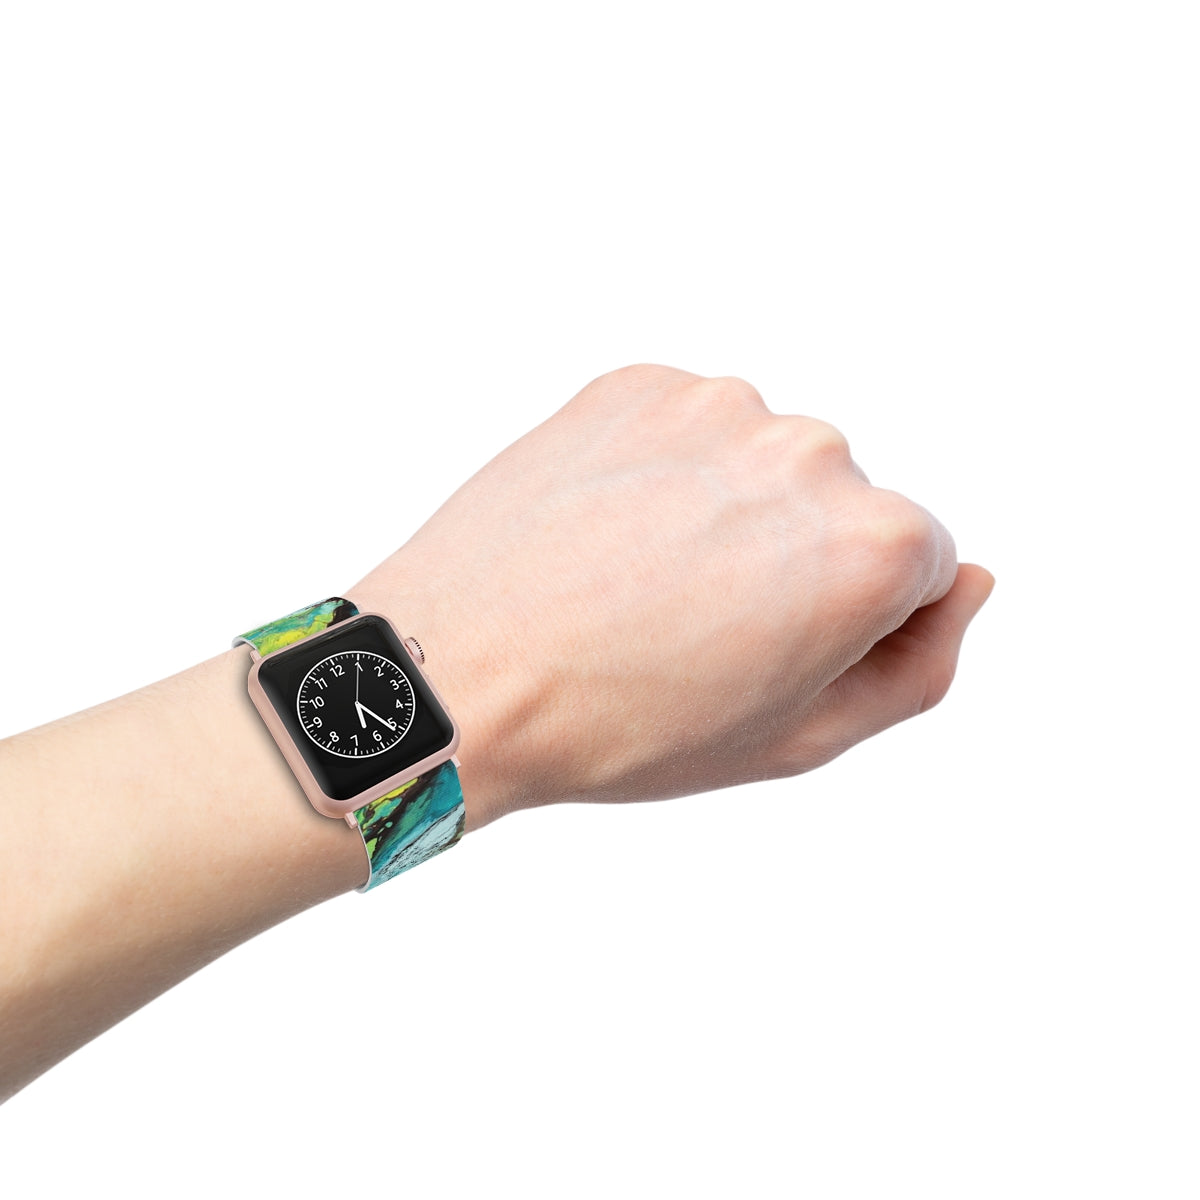 Pulseira de relógio para Apple Watch - design azul profundo 